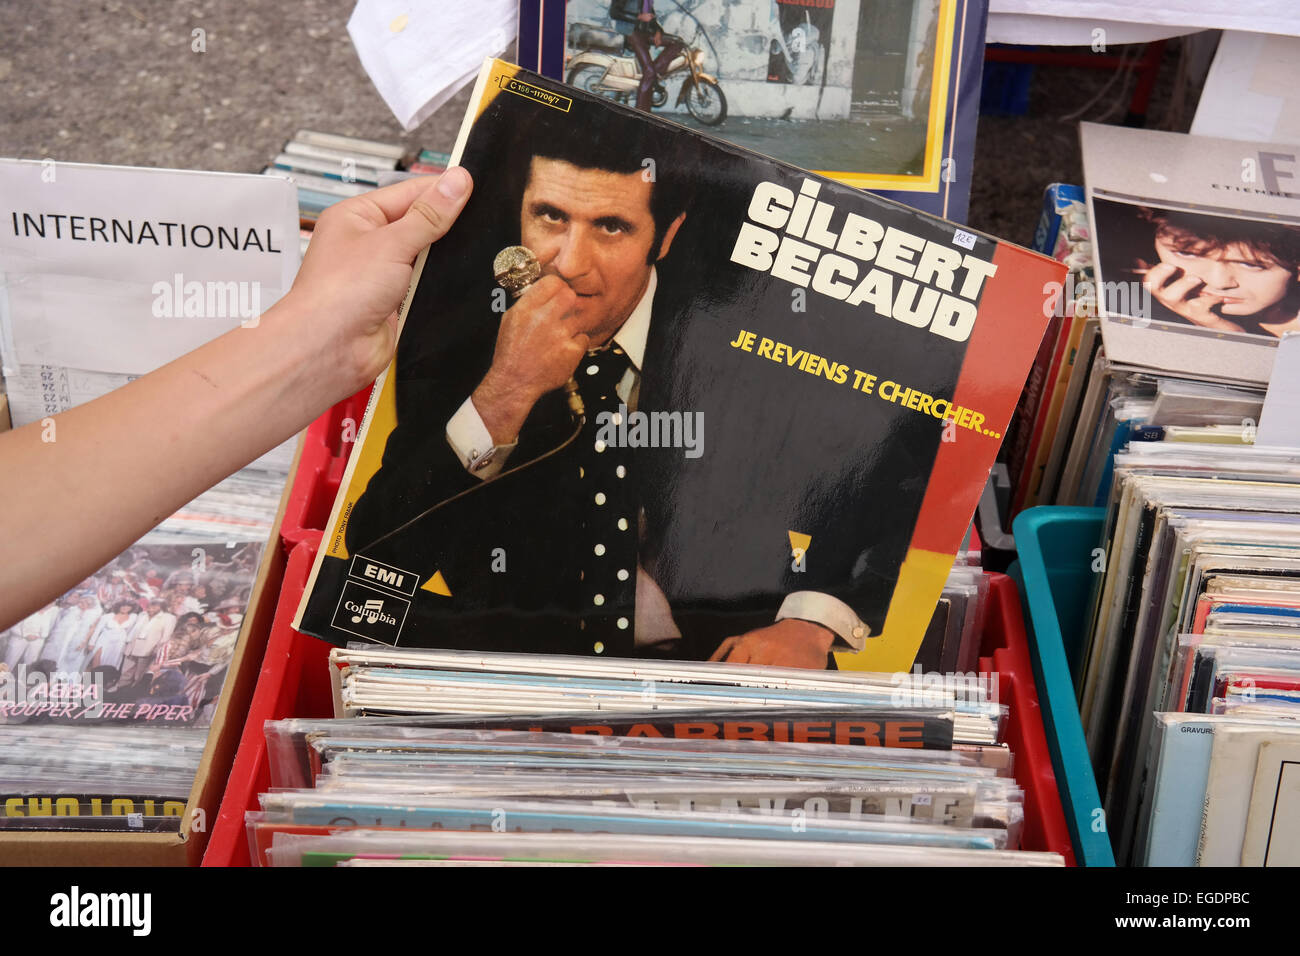 Frankreich - Juli 2014: Schallplatte von französischer Sänger, Komponist, Pianist und Schauspieler Gilbert Becaud auf einem Flohmarkt Stockfoto